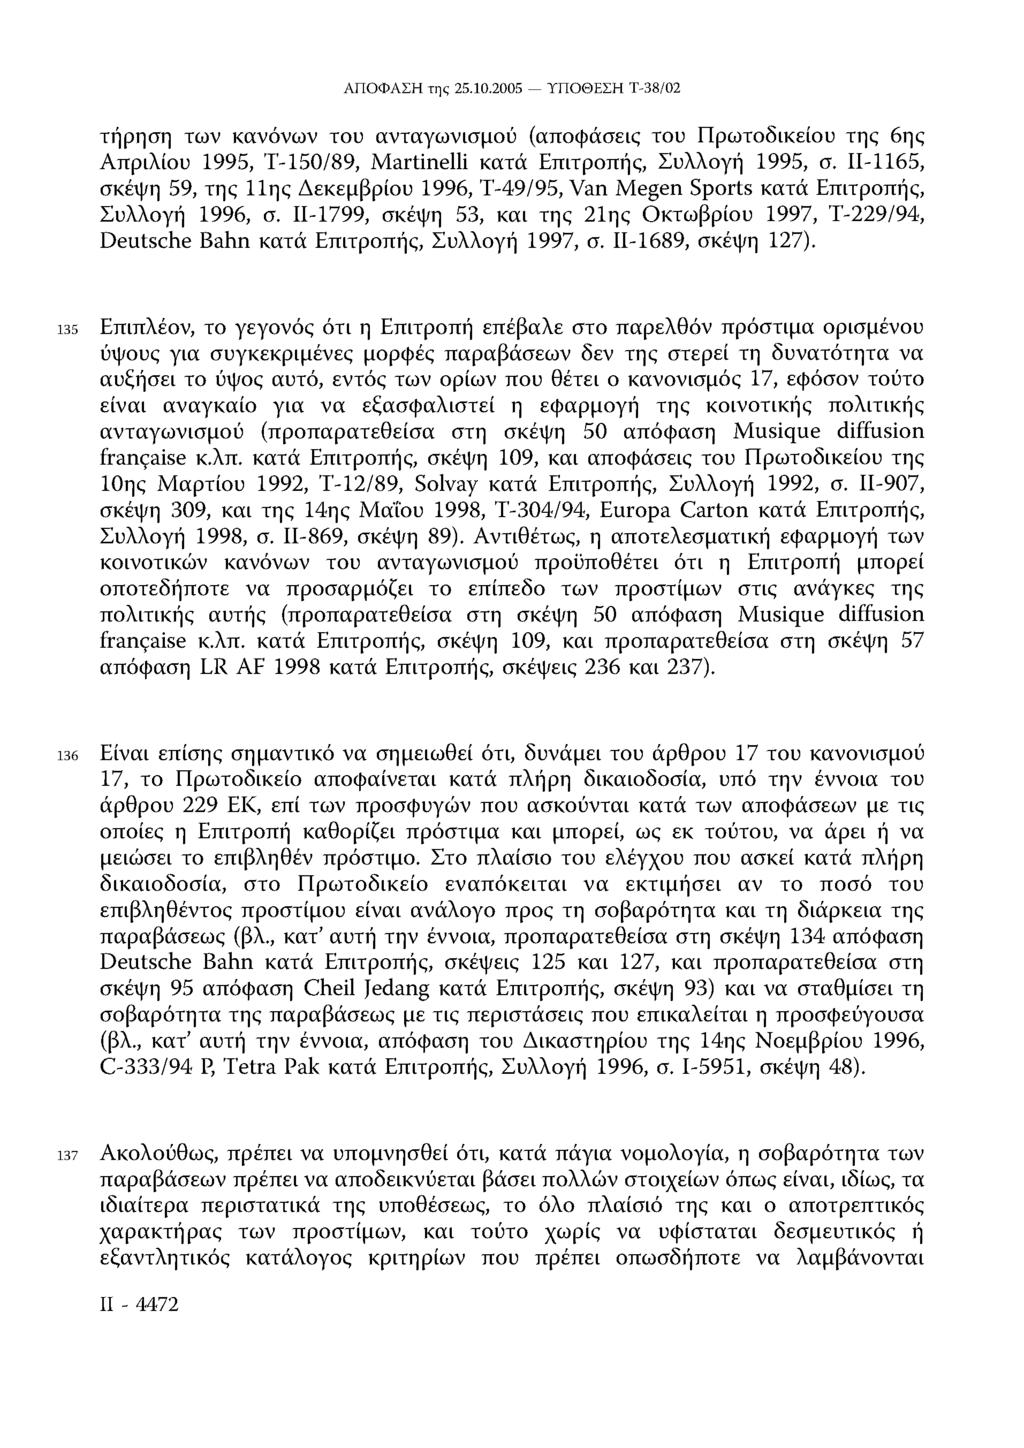 τήρηση των κανόνων του ανταγωνισμού (αποφάσεις του Πρωτοδικείου της 6ης Απριλίου 1995, T-150/89, Martinelli κατά Επιτροπής, Συλλογή 1995, σ.